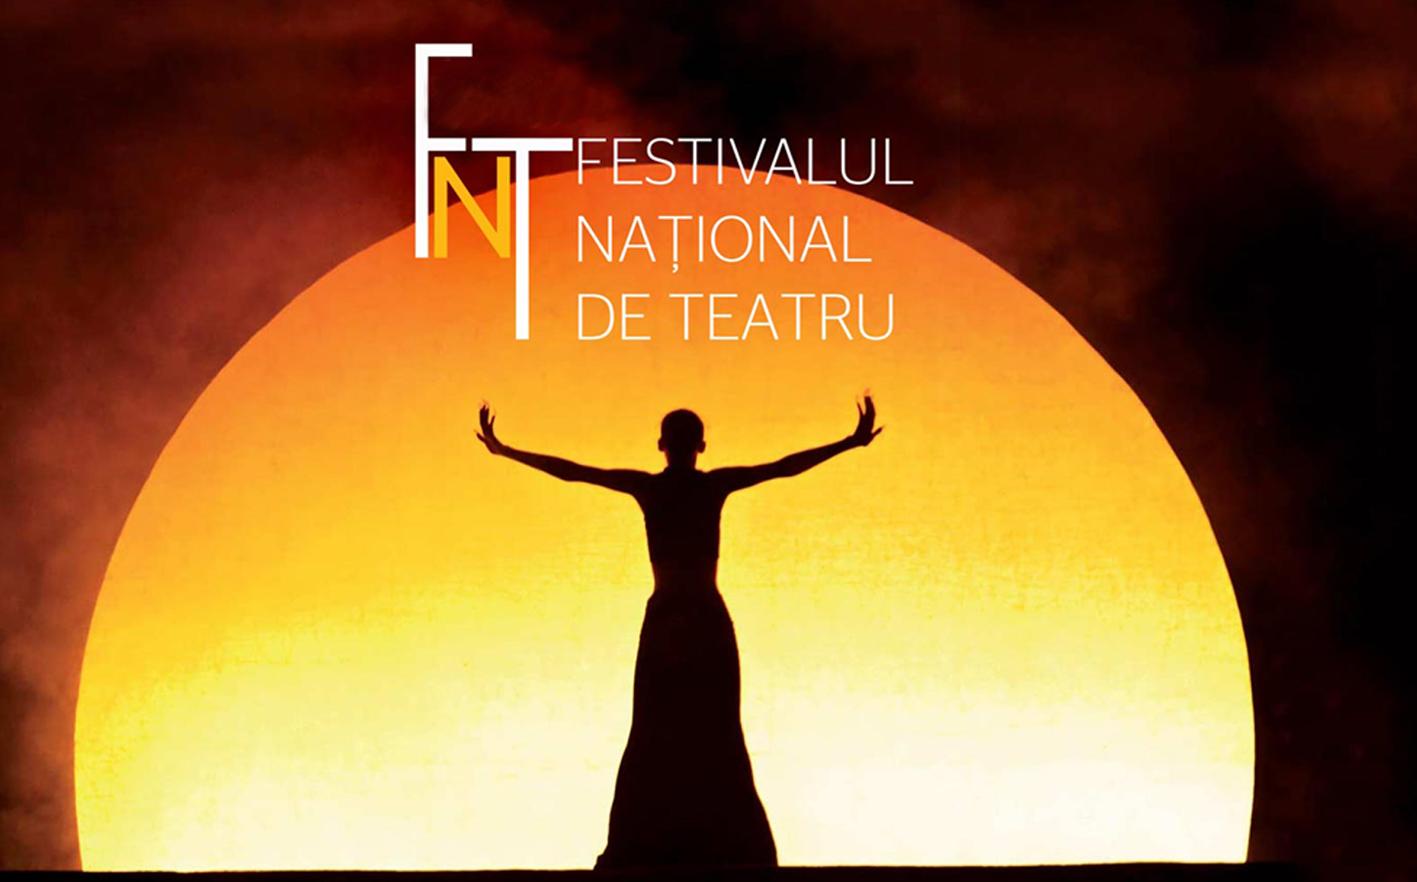 Festivalul Național de Teatru. Peste 100 de evenimente în doar 11 zile